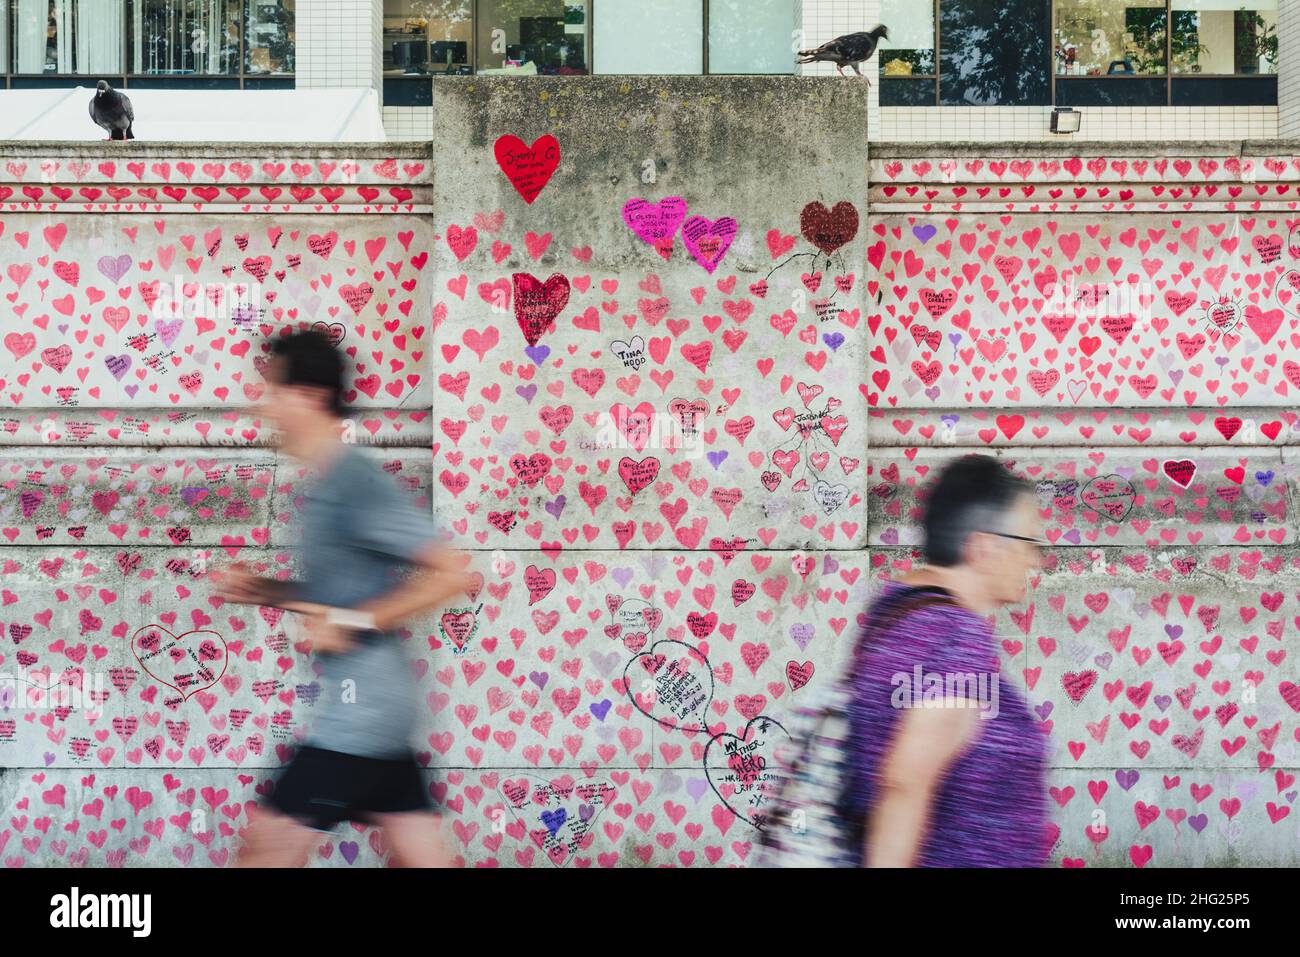 Une section du mur commémoratif national Covid couverte de coeurs roses peints et d'hommages aux victimes de la pandémie sur la rive sud de Londres Banque D'Images